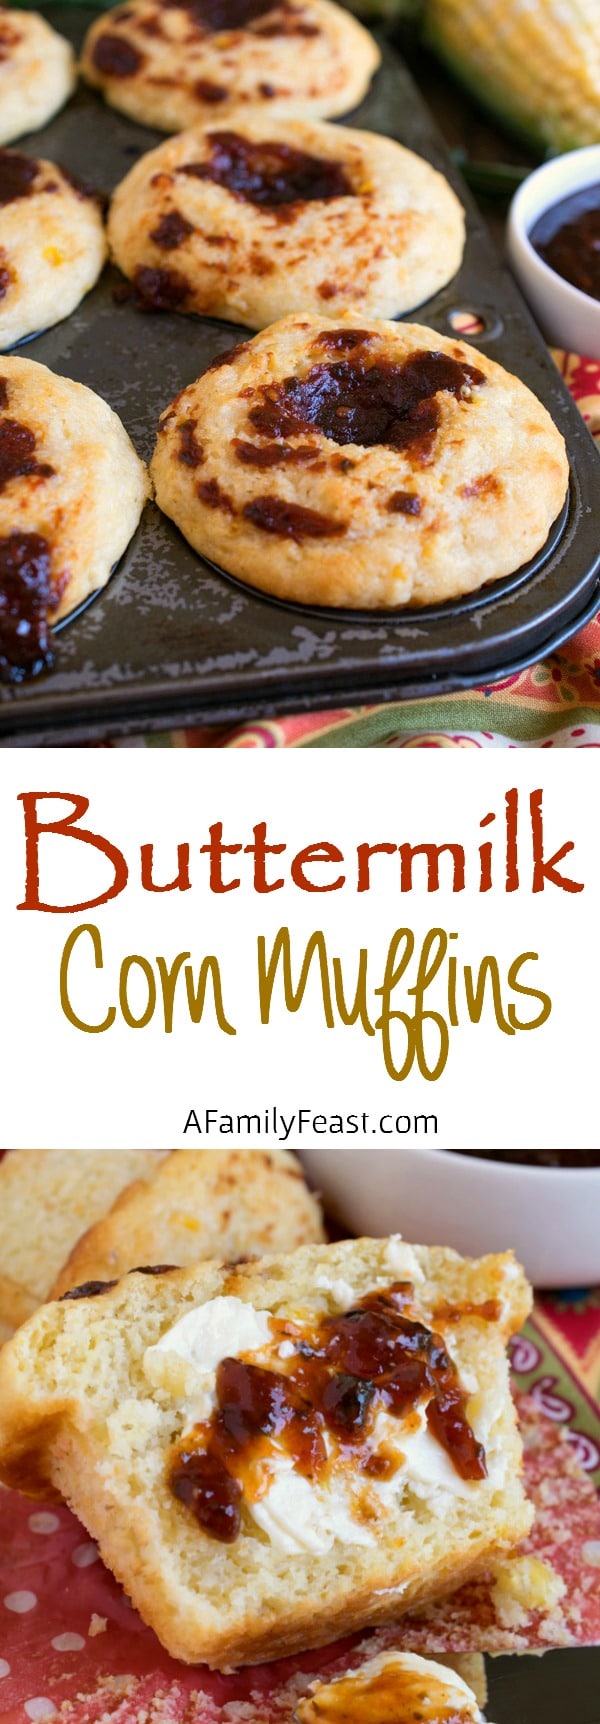 Buttermilk Corn Muffins - A Family Feast